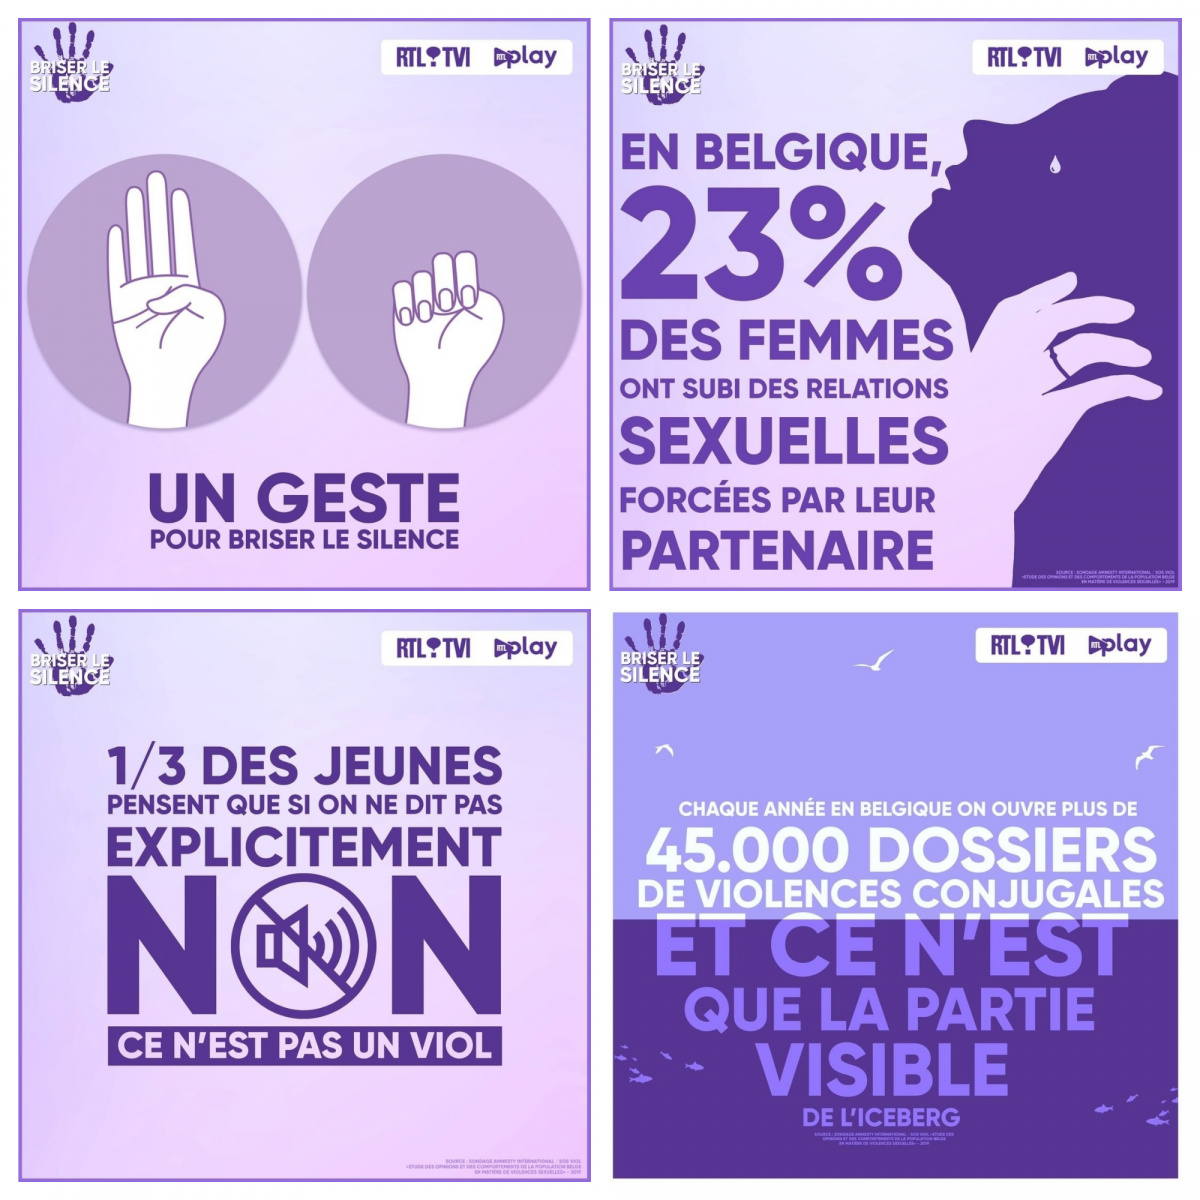 RTL Belgium se mobilise à l’occasion de la semaine de lutte contre les violences faites aux femmes